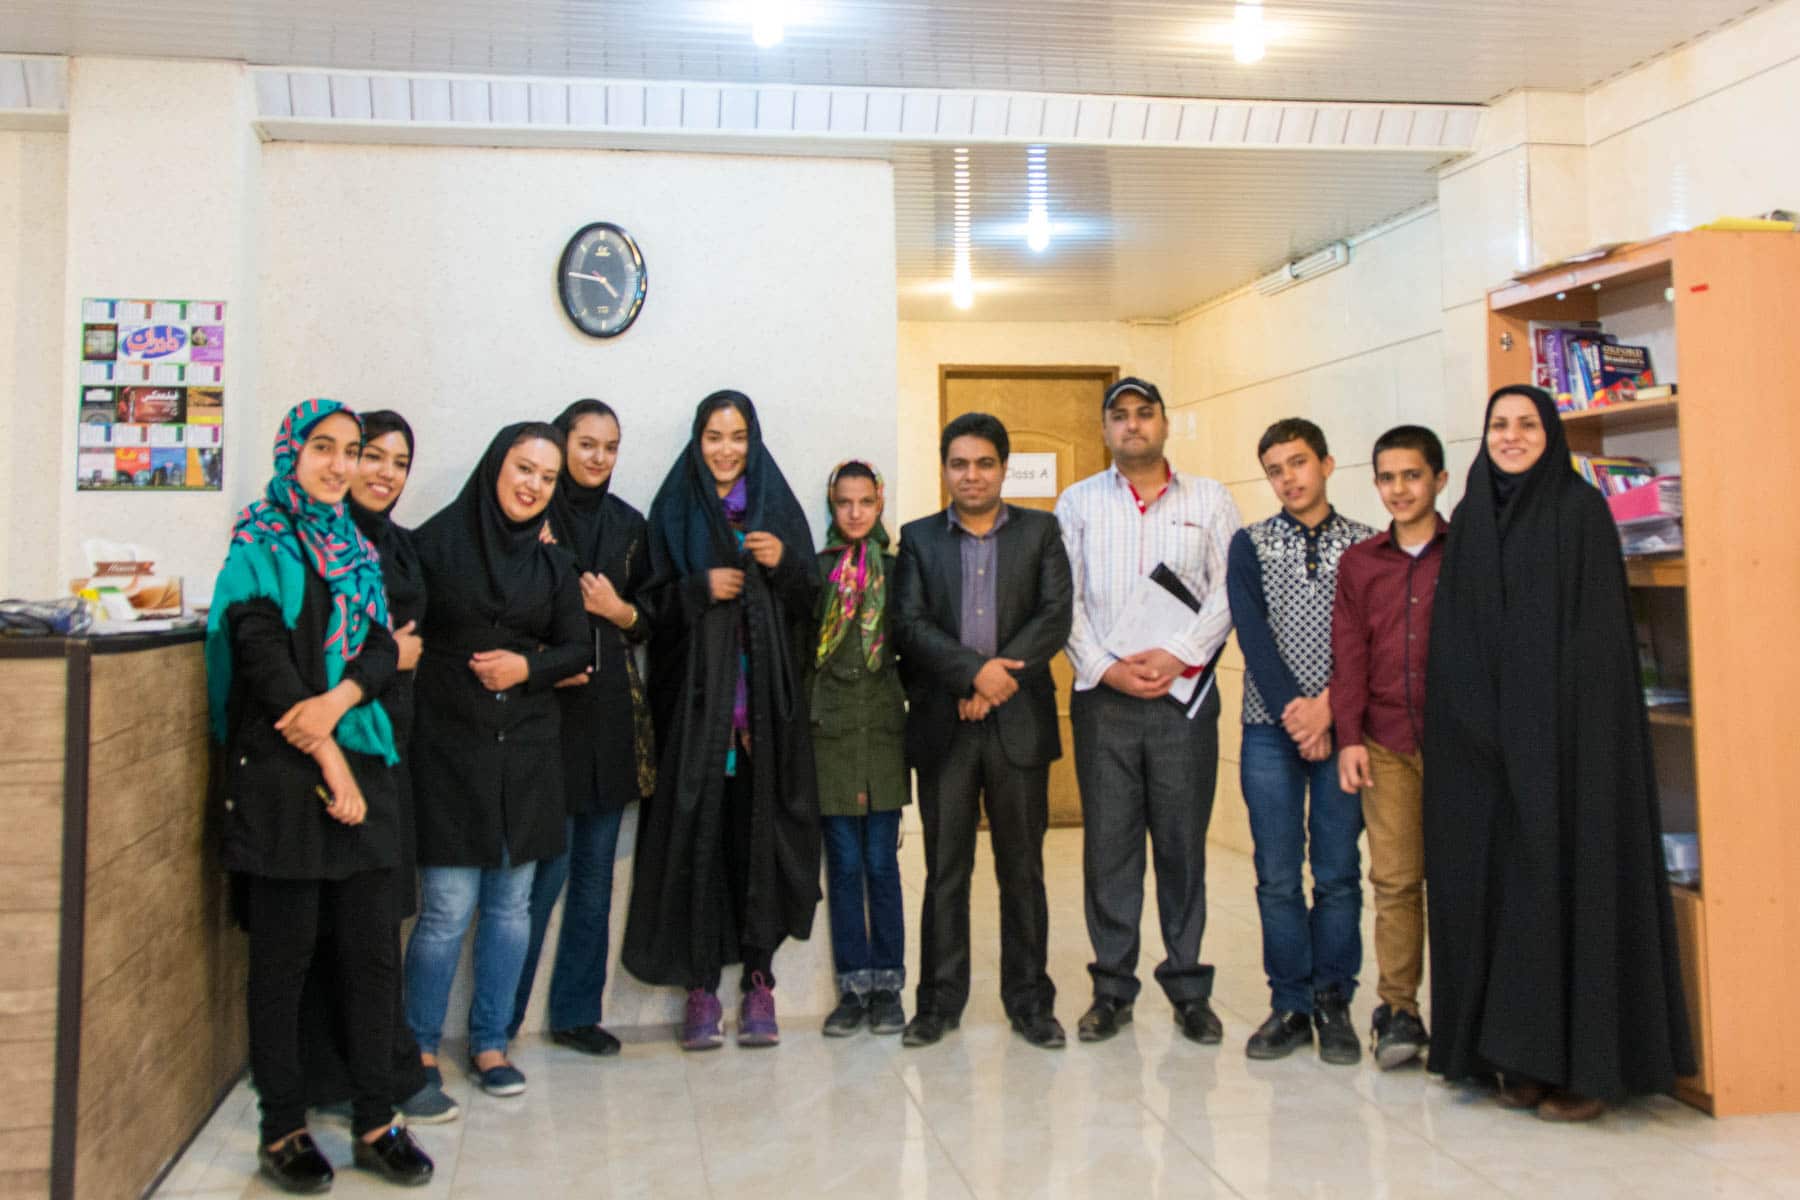 Teaching English in Iran... in chador!